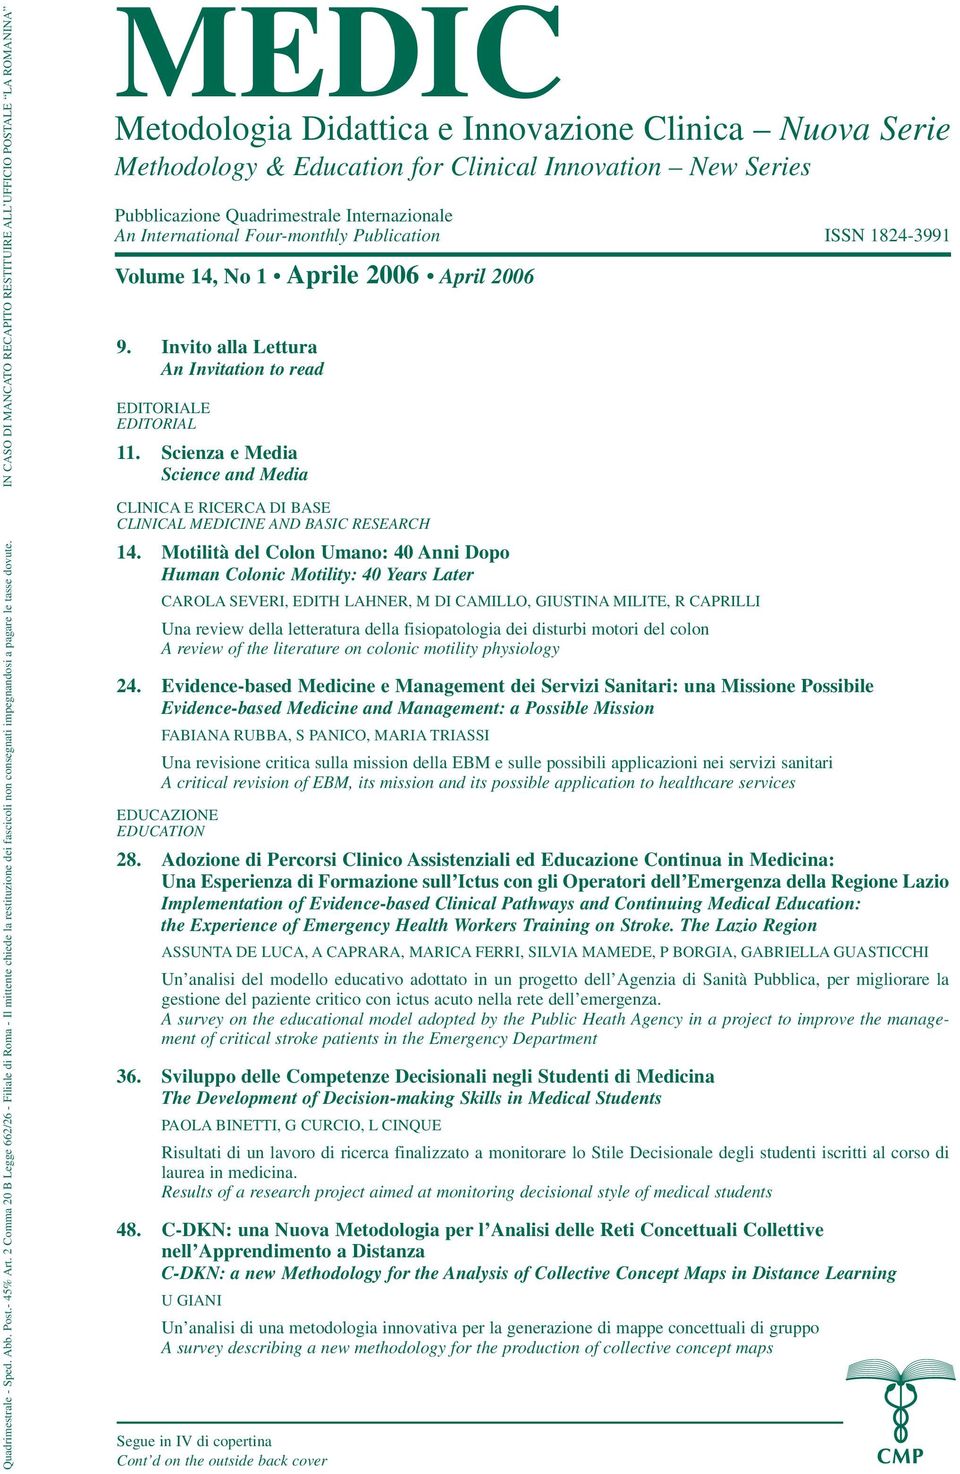 Pubblicazione Quadrimestrale Internazionale An International Four-monthly Publication ISSN 1824-3991 Volume 14, No 1 Aprile 2006 April 2006 9.